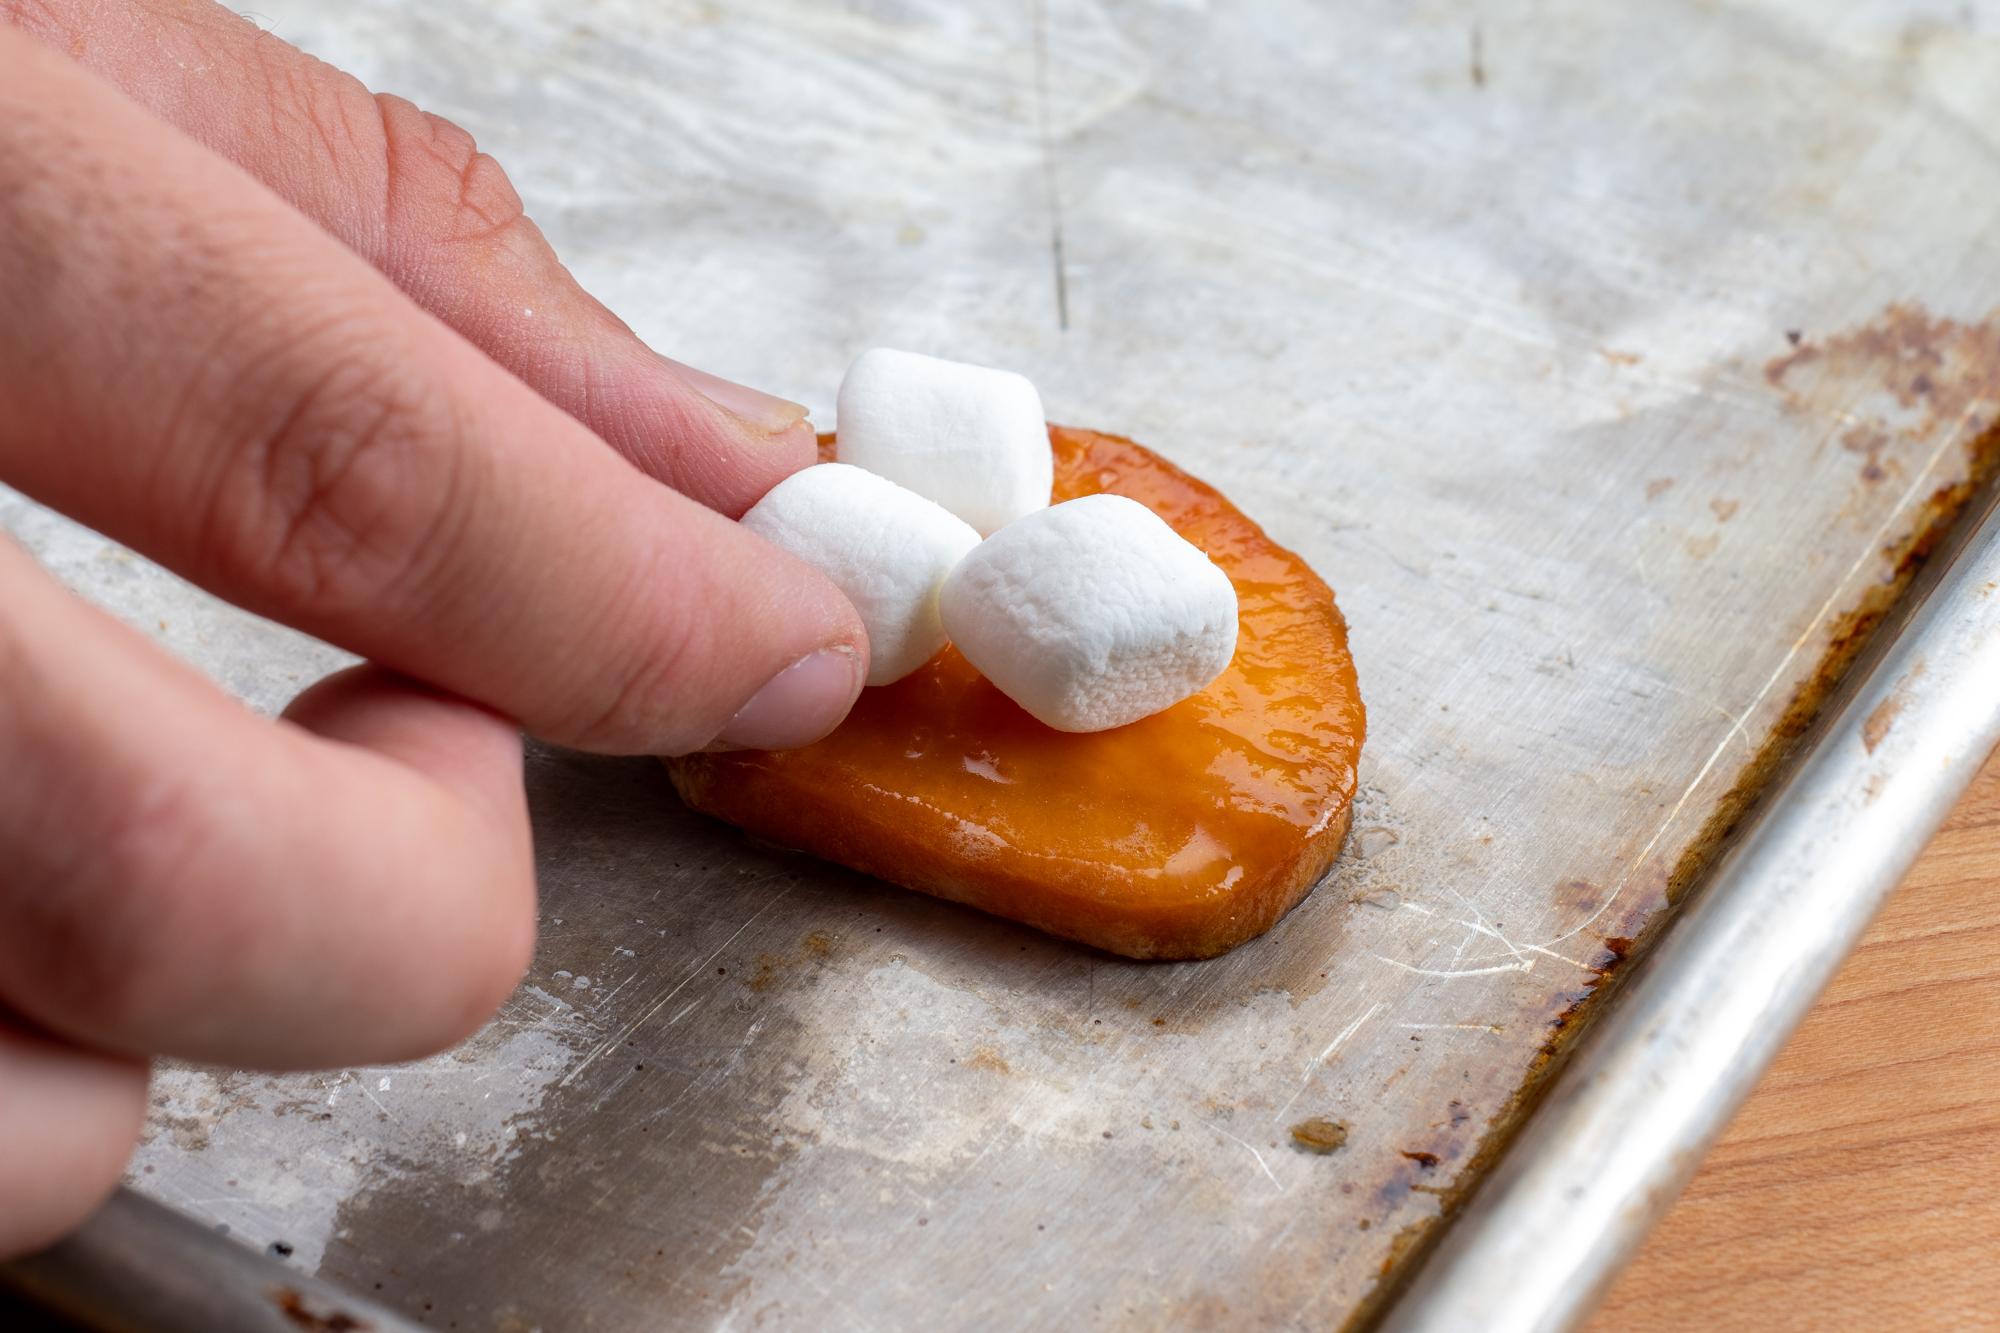 Putting marshmallows on the sweet potato slices.